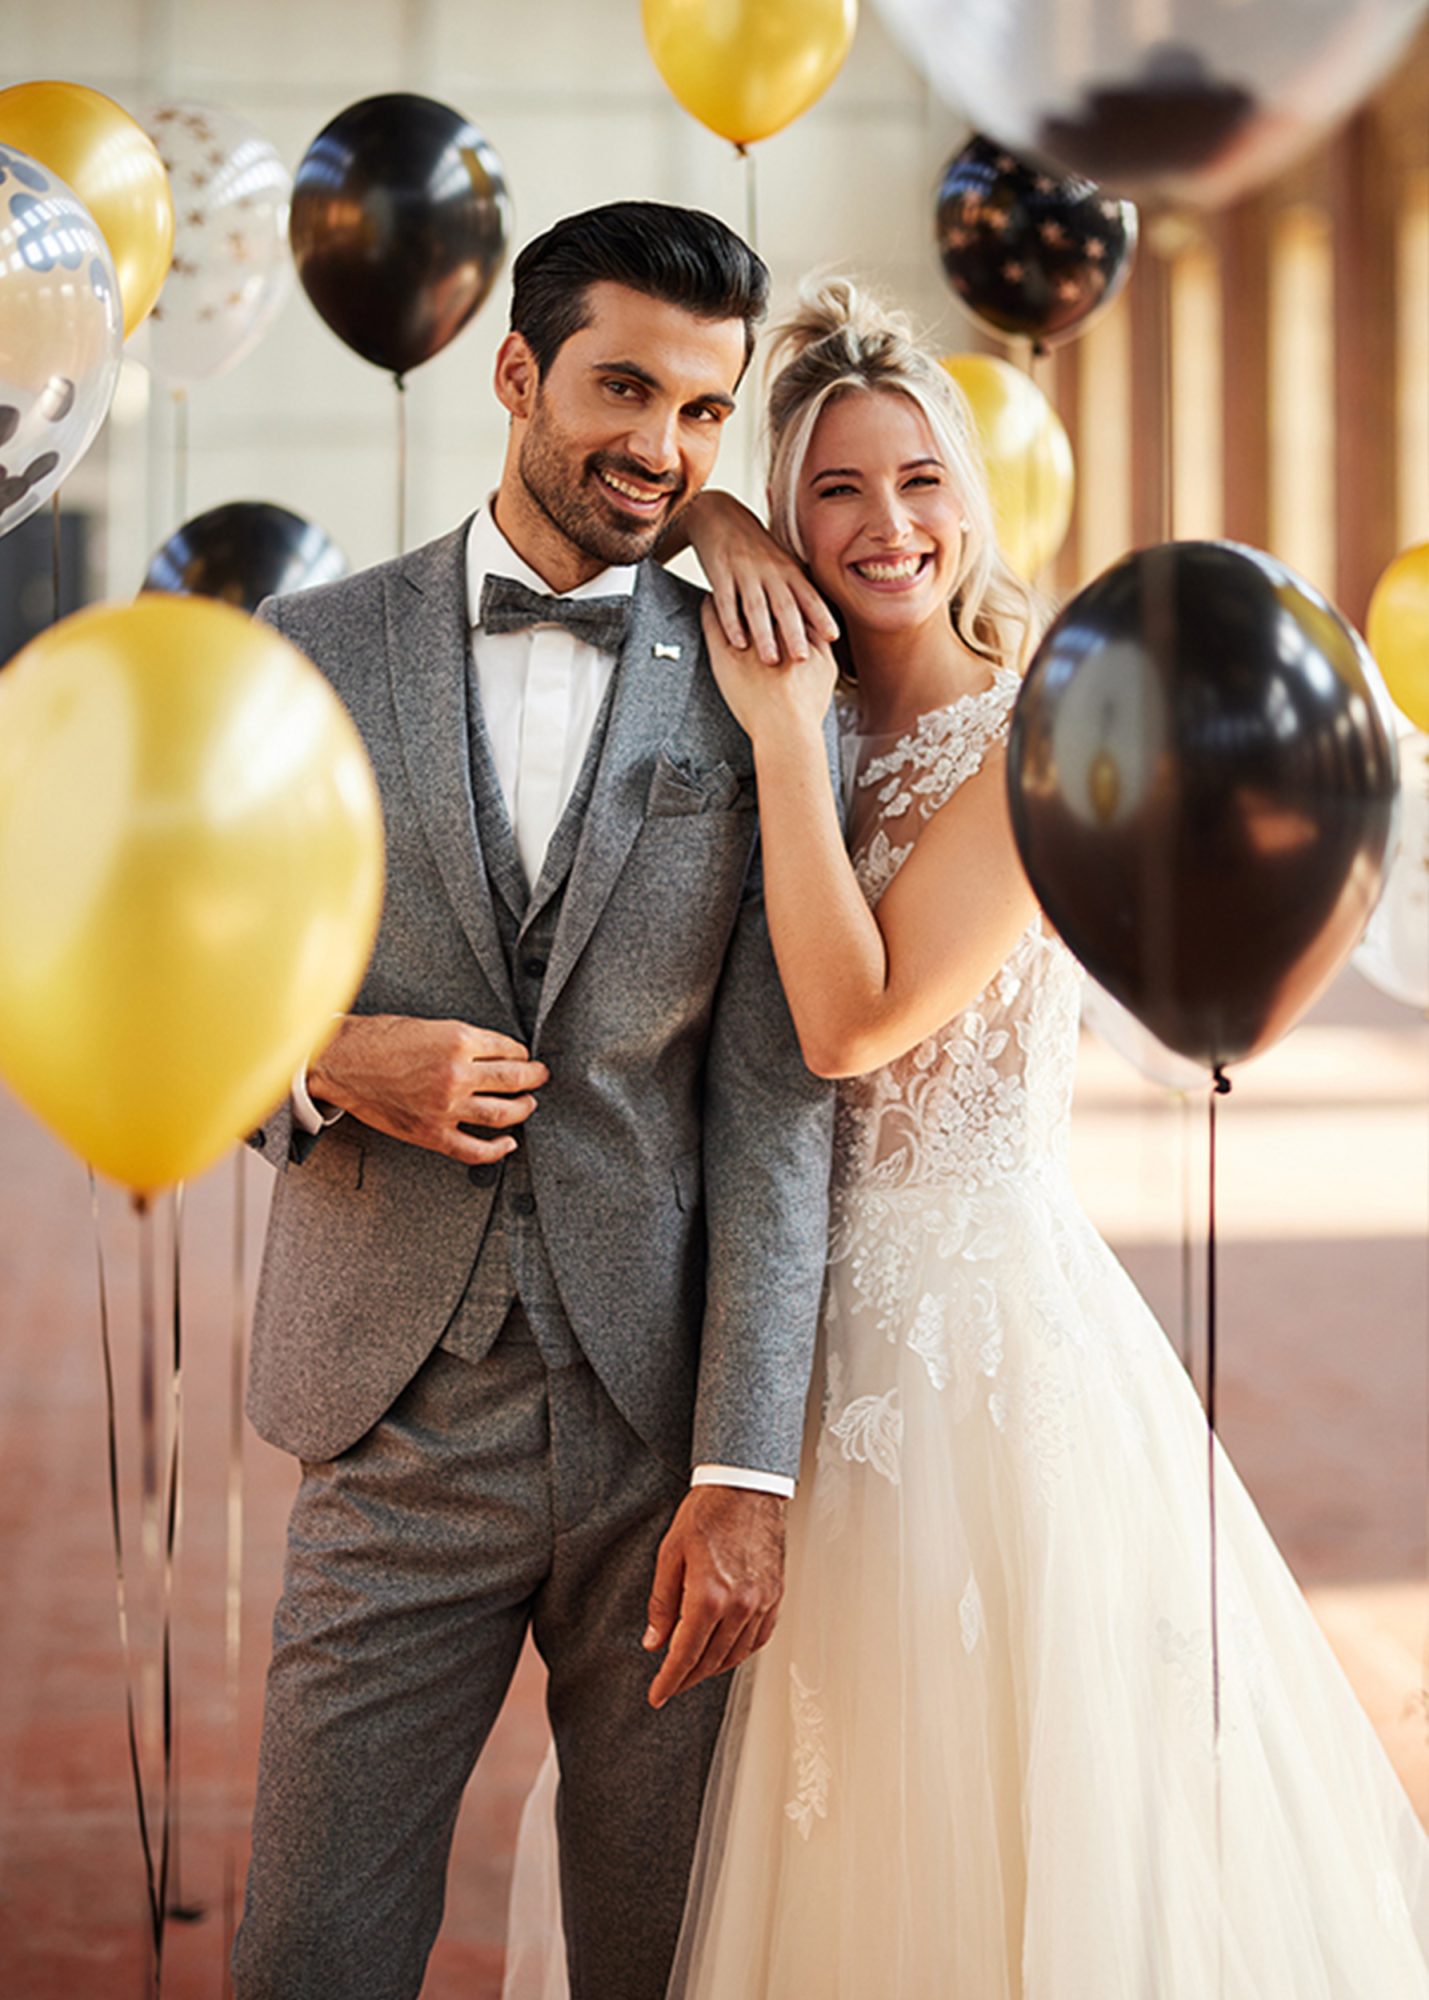 Hochzeitsanzug von der niederländischen Marke Immediate in der Farbe Mittelgrau